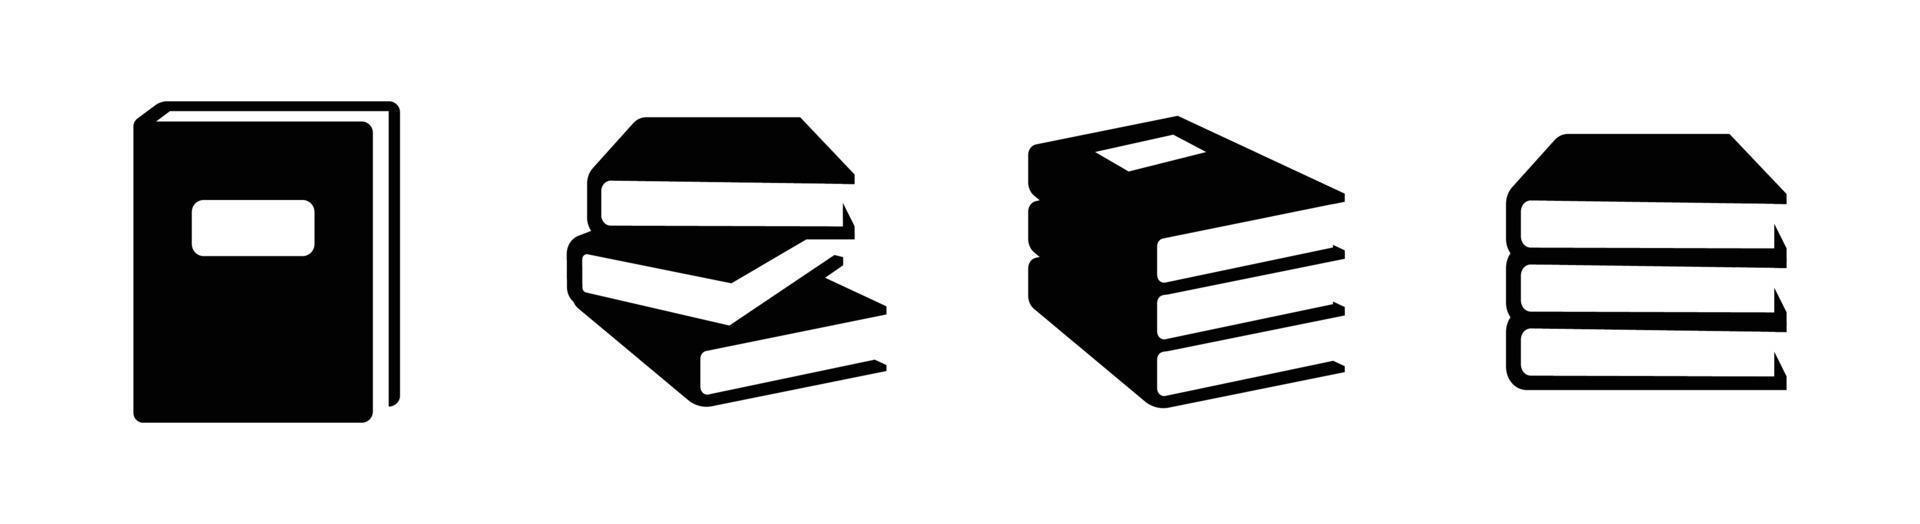 elemento de diseño de icono de libro adecuado para sitio web, diseño de impresión o aplicación vector